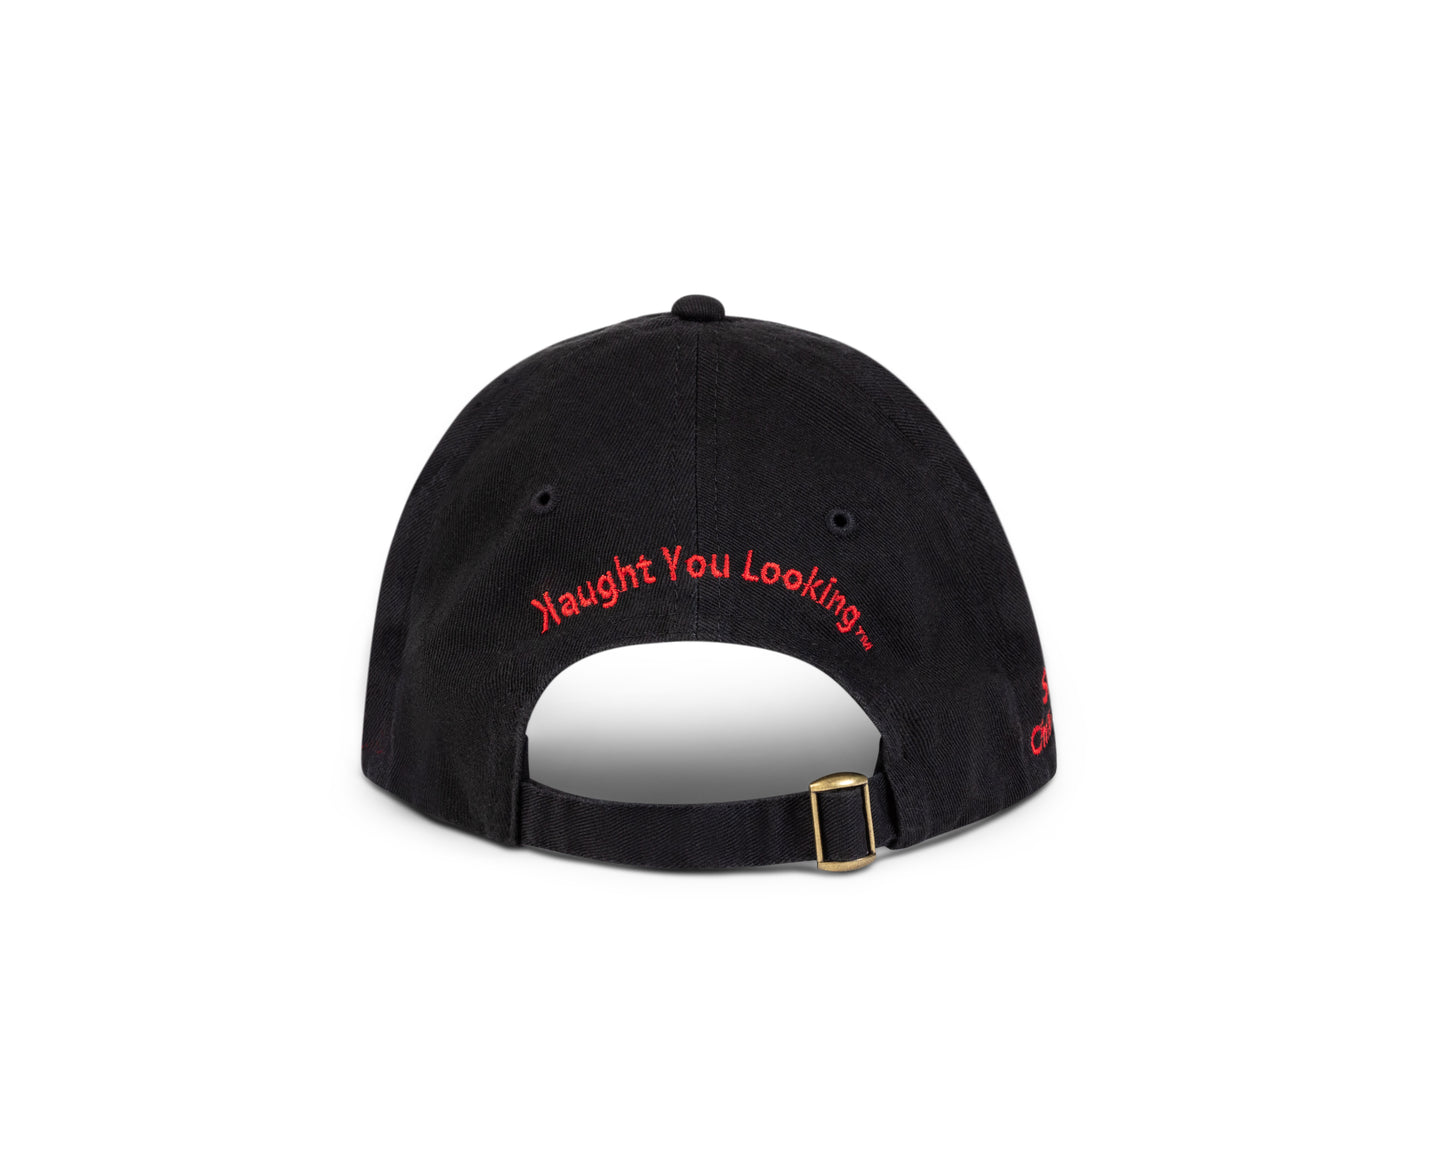 The Backwards K Hat